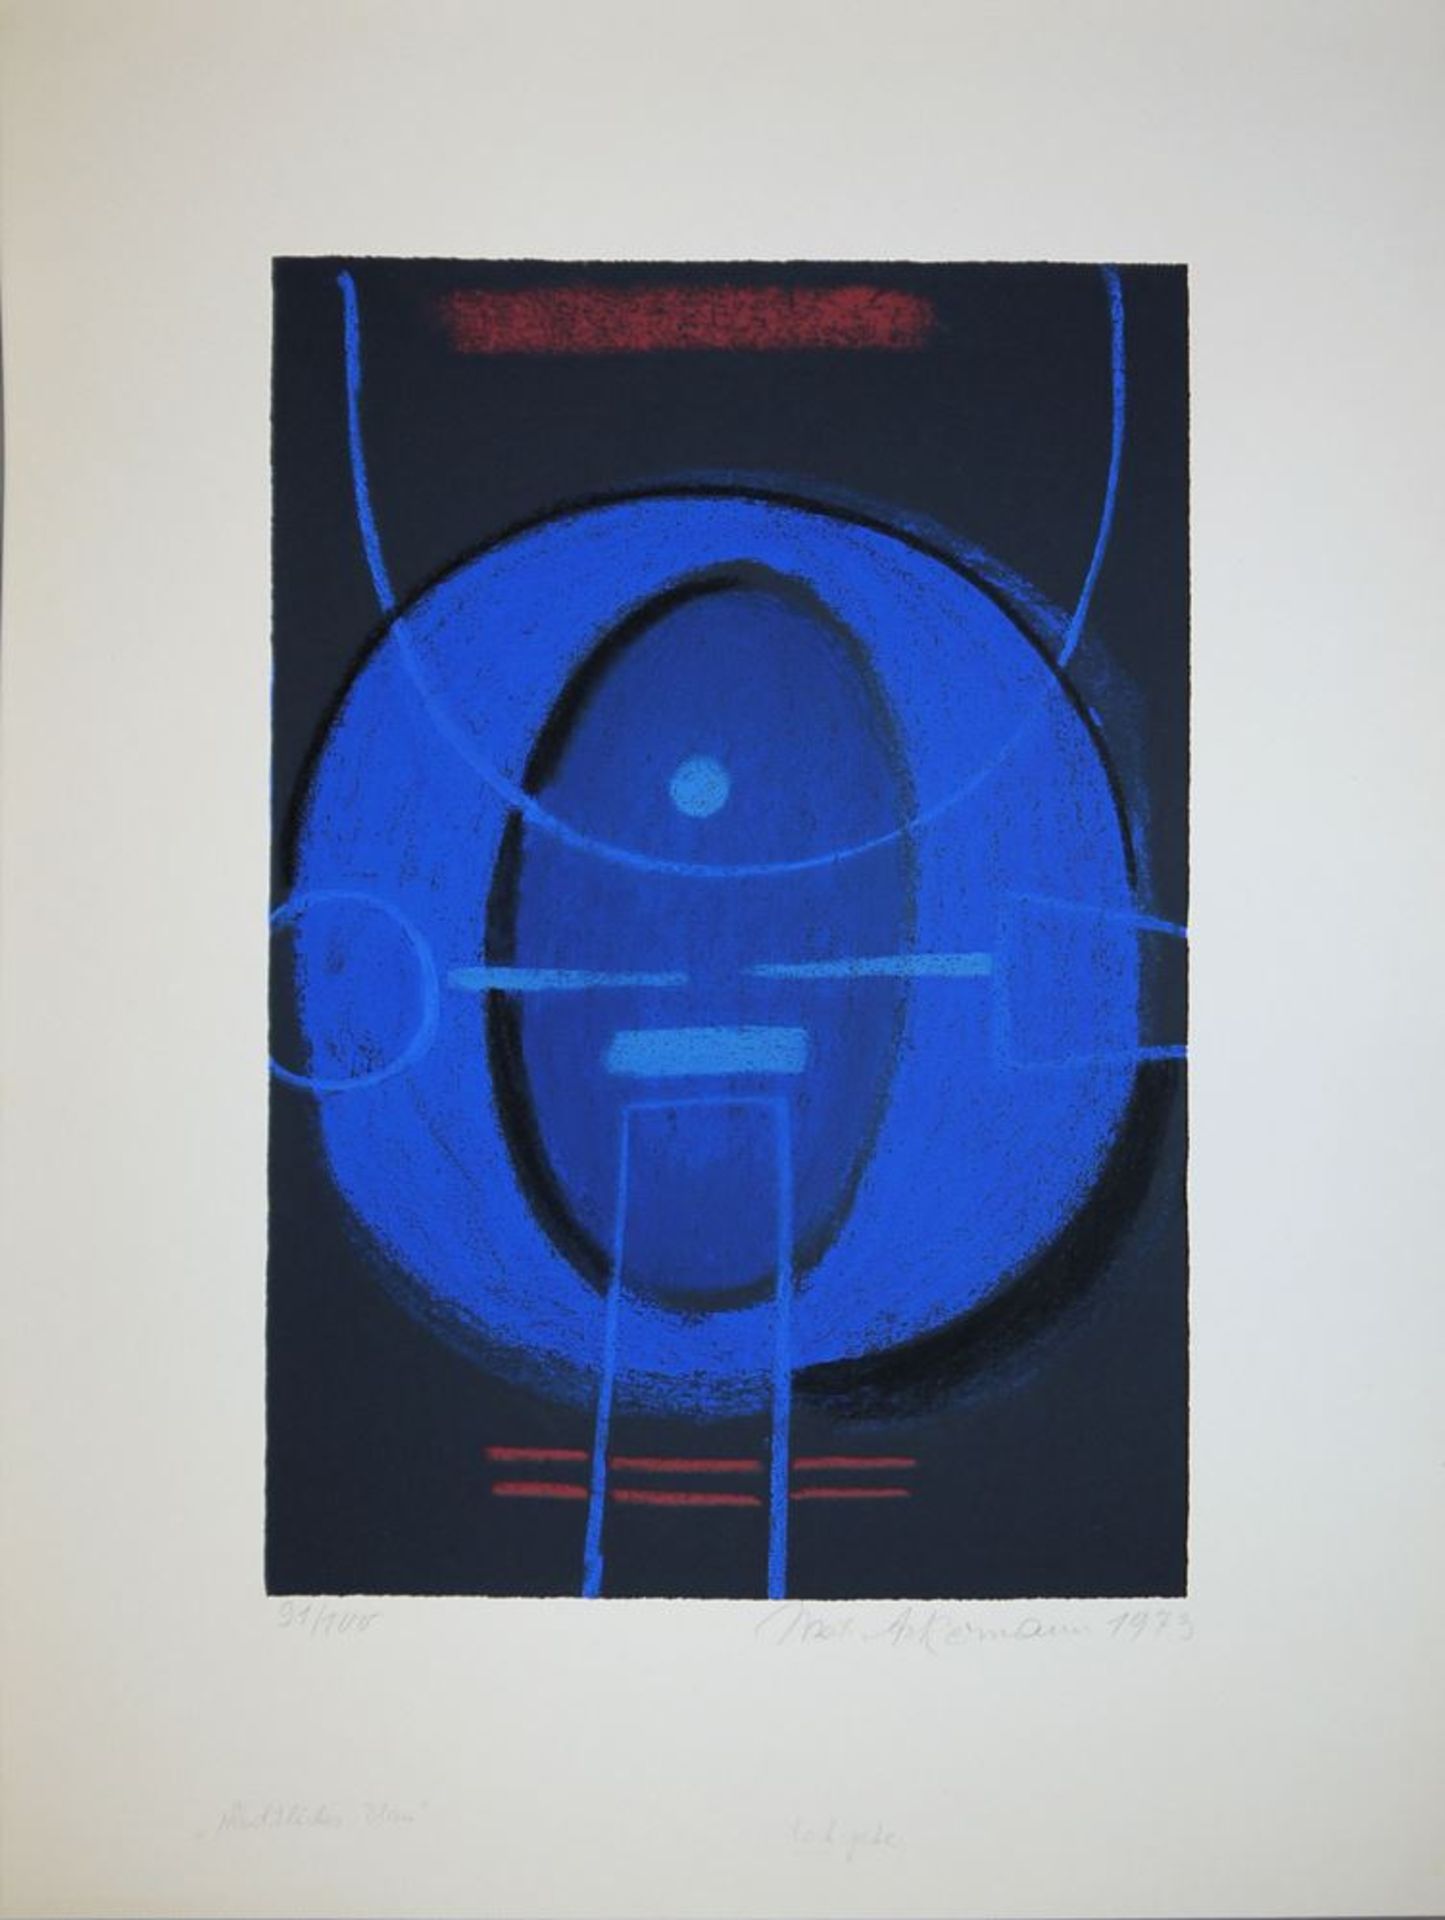 Max Ackermann, "Nächtliches Blau", signierte Farbserigraphie von 1973